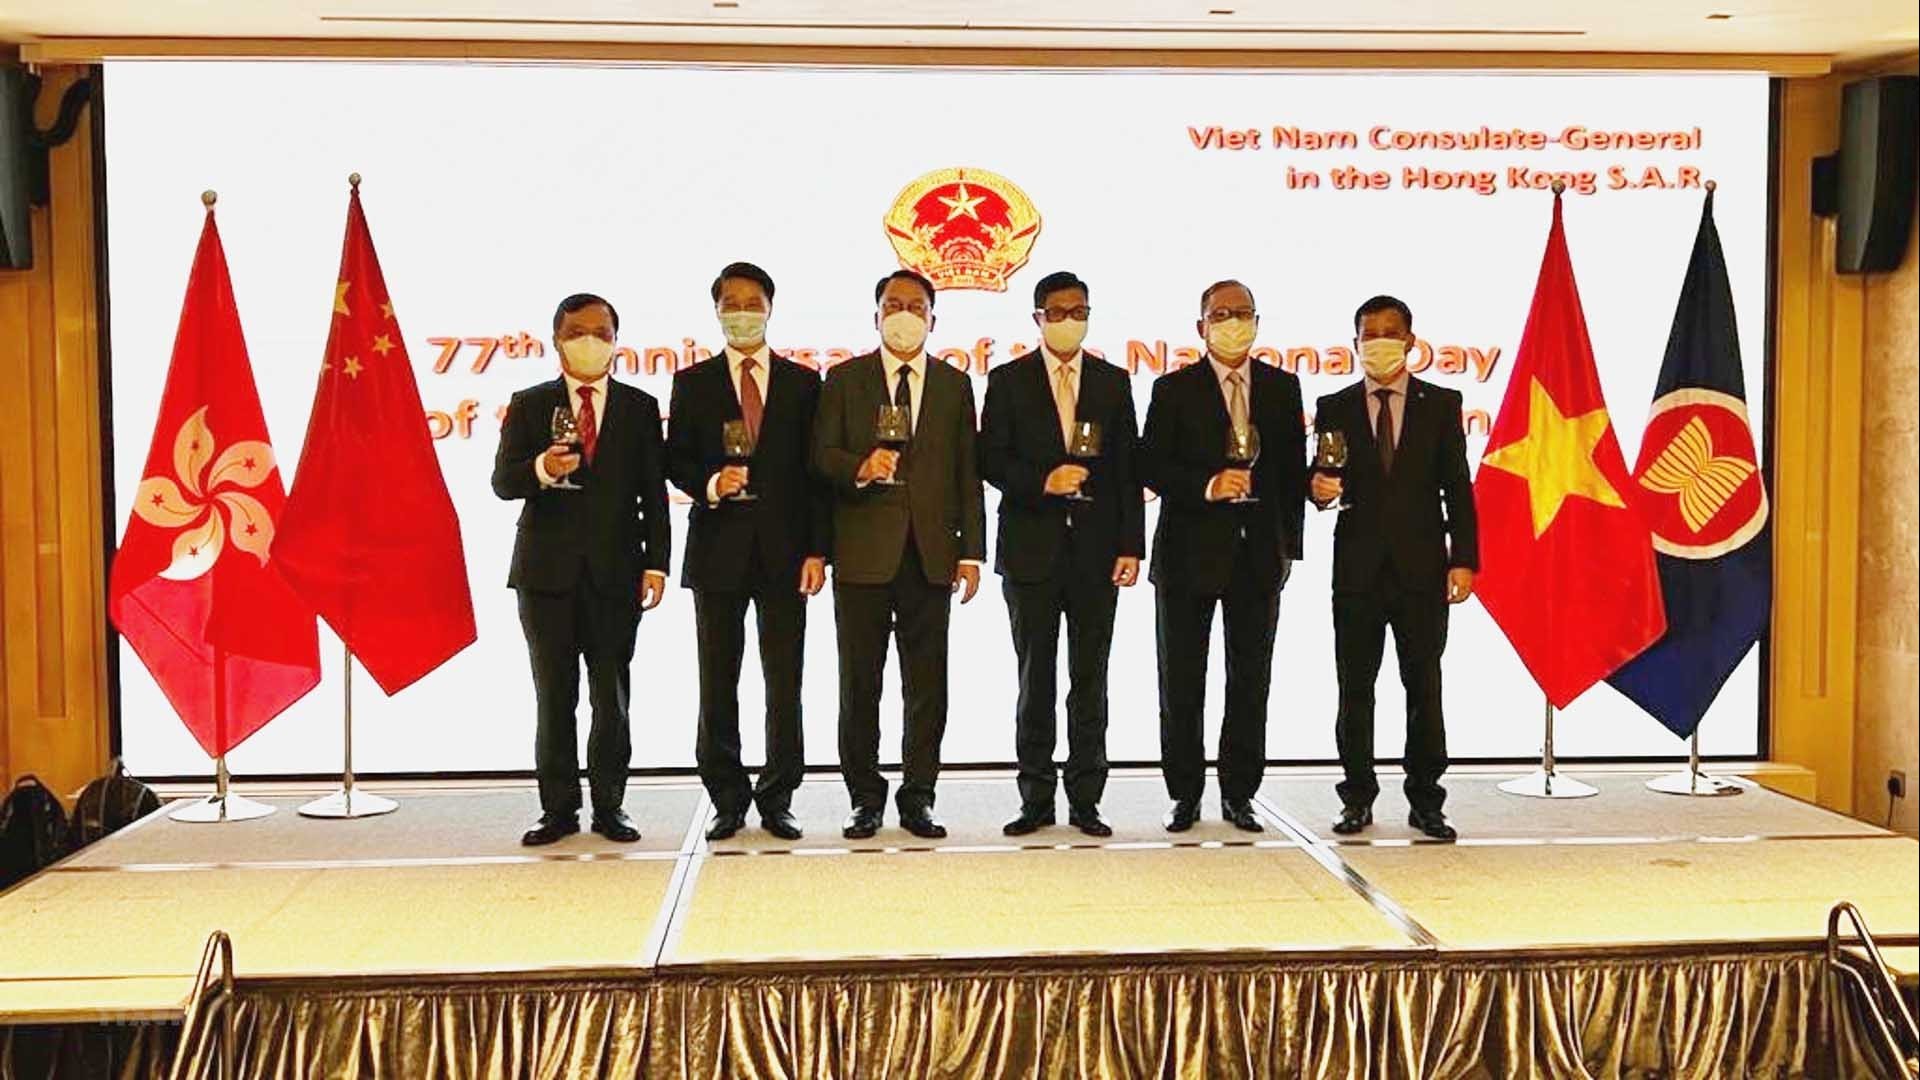 Long trọng kỷ niệm 77 năm Quốc khánh Việt Nam tại Hong Kong